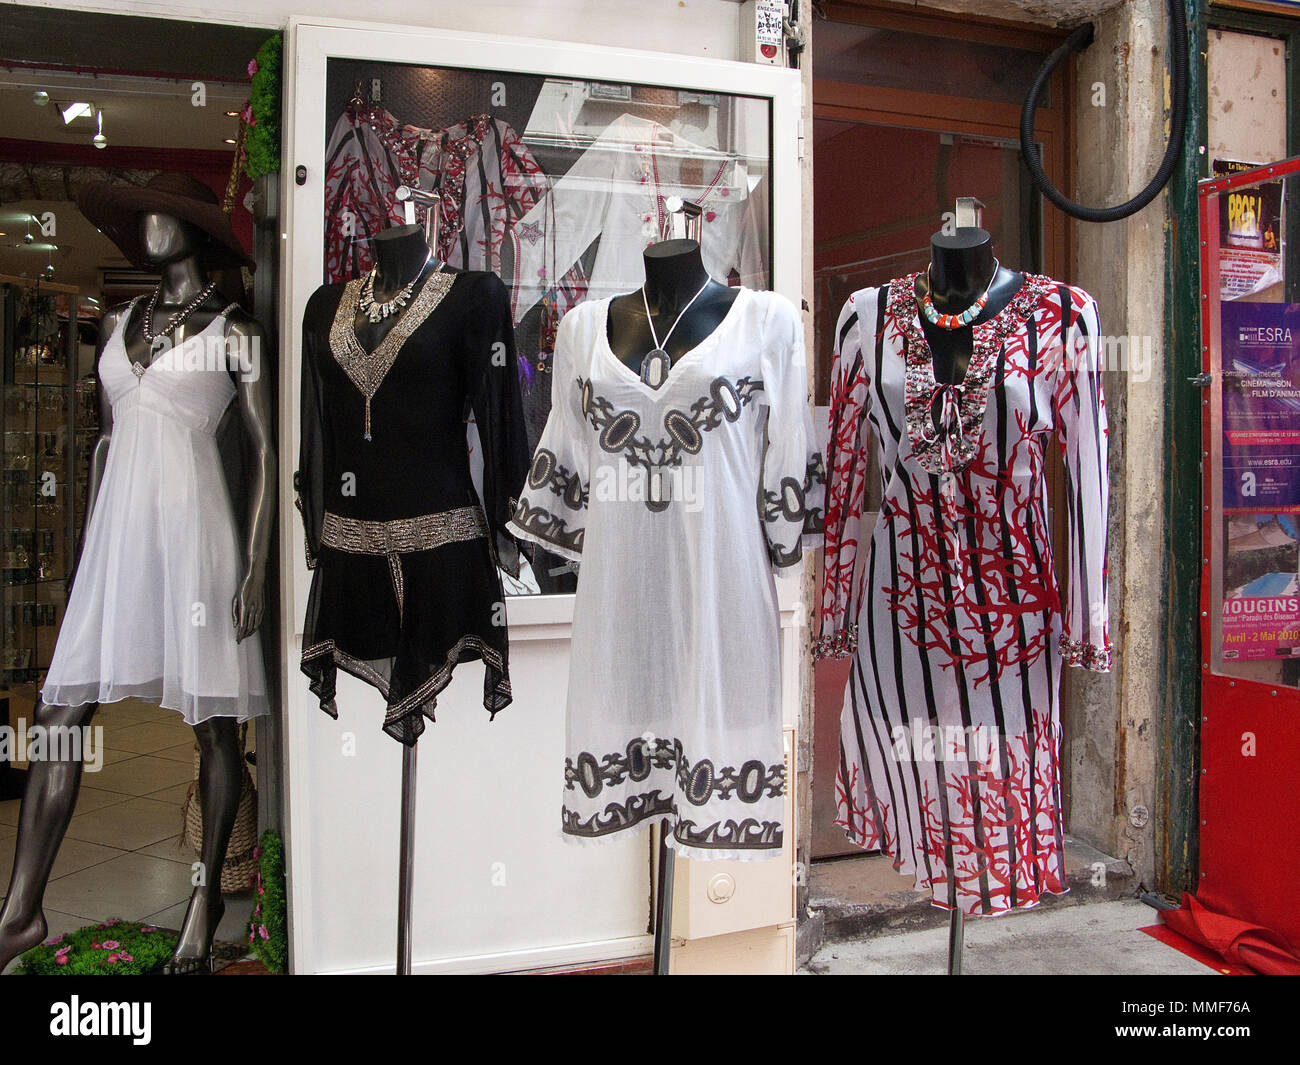 Modegeschaeft, Boutique in einer Einkaufstrasse nahe dem Place Massena, Nizza, Suedfrankreich, Alpes-Maritimes, Cote d'Azur, Frankreich, Europa, Mitte Stock Photo